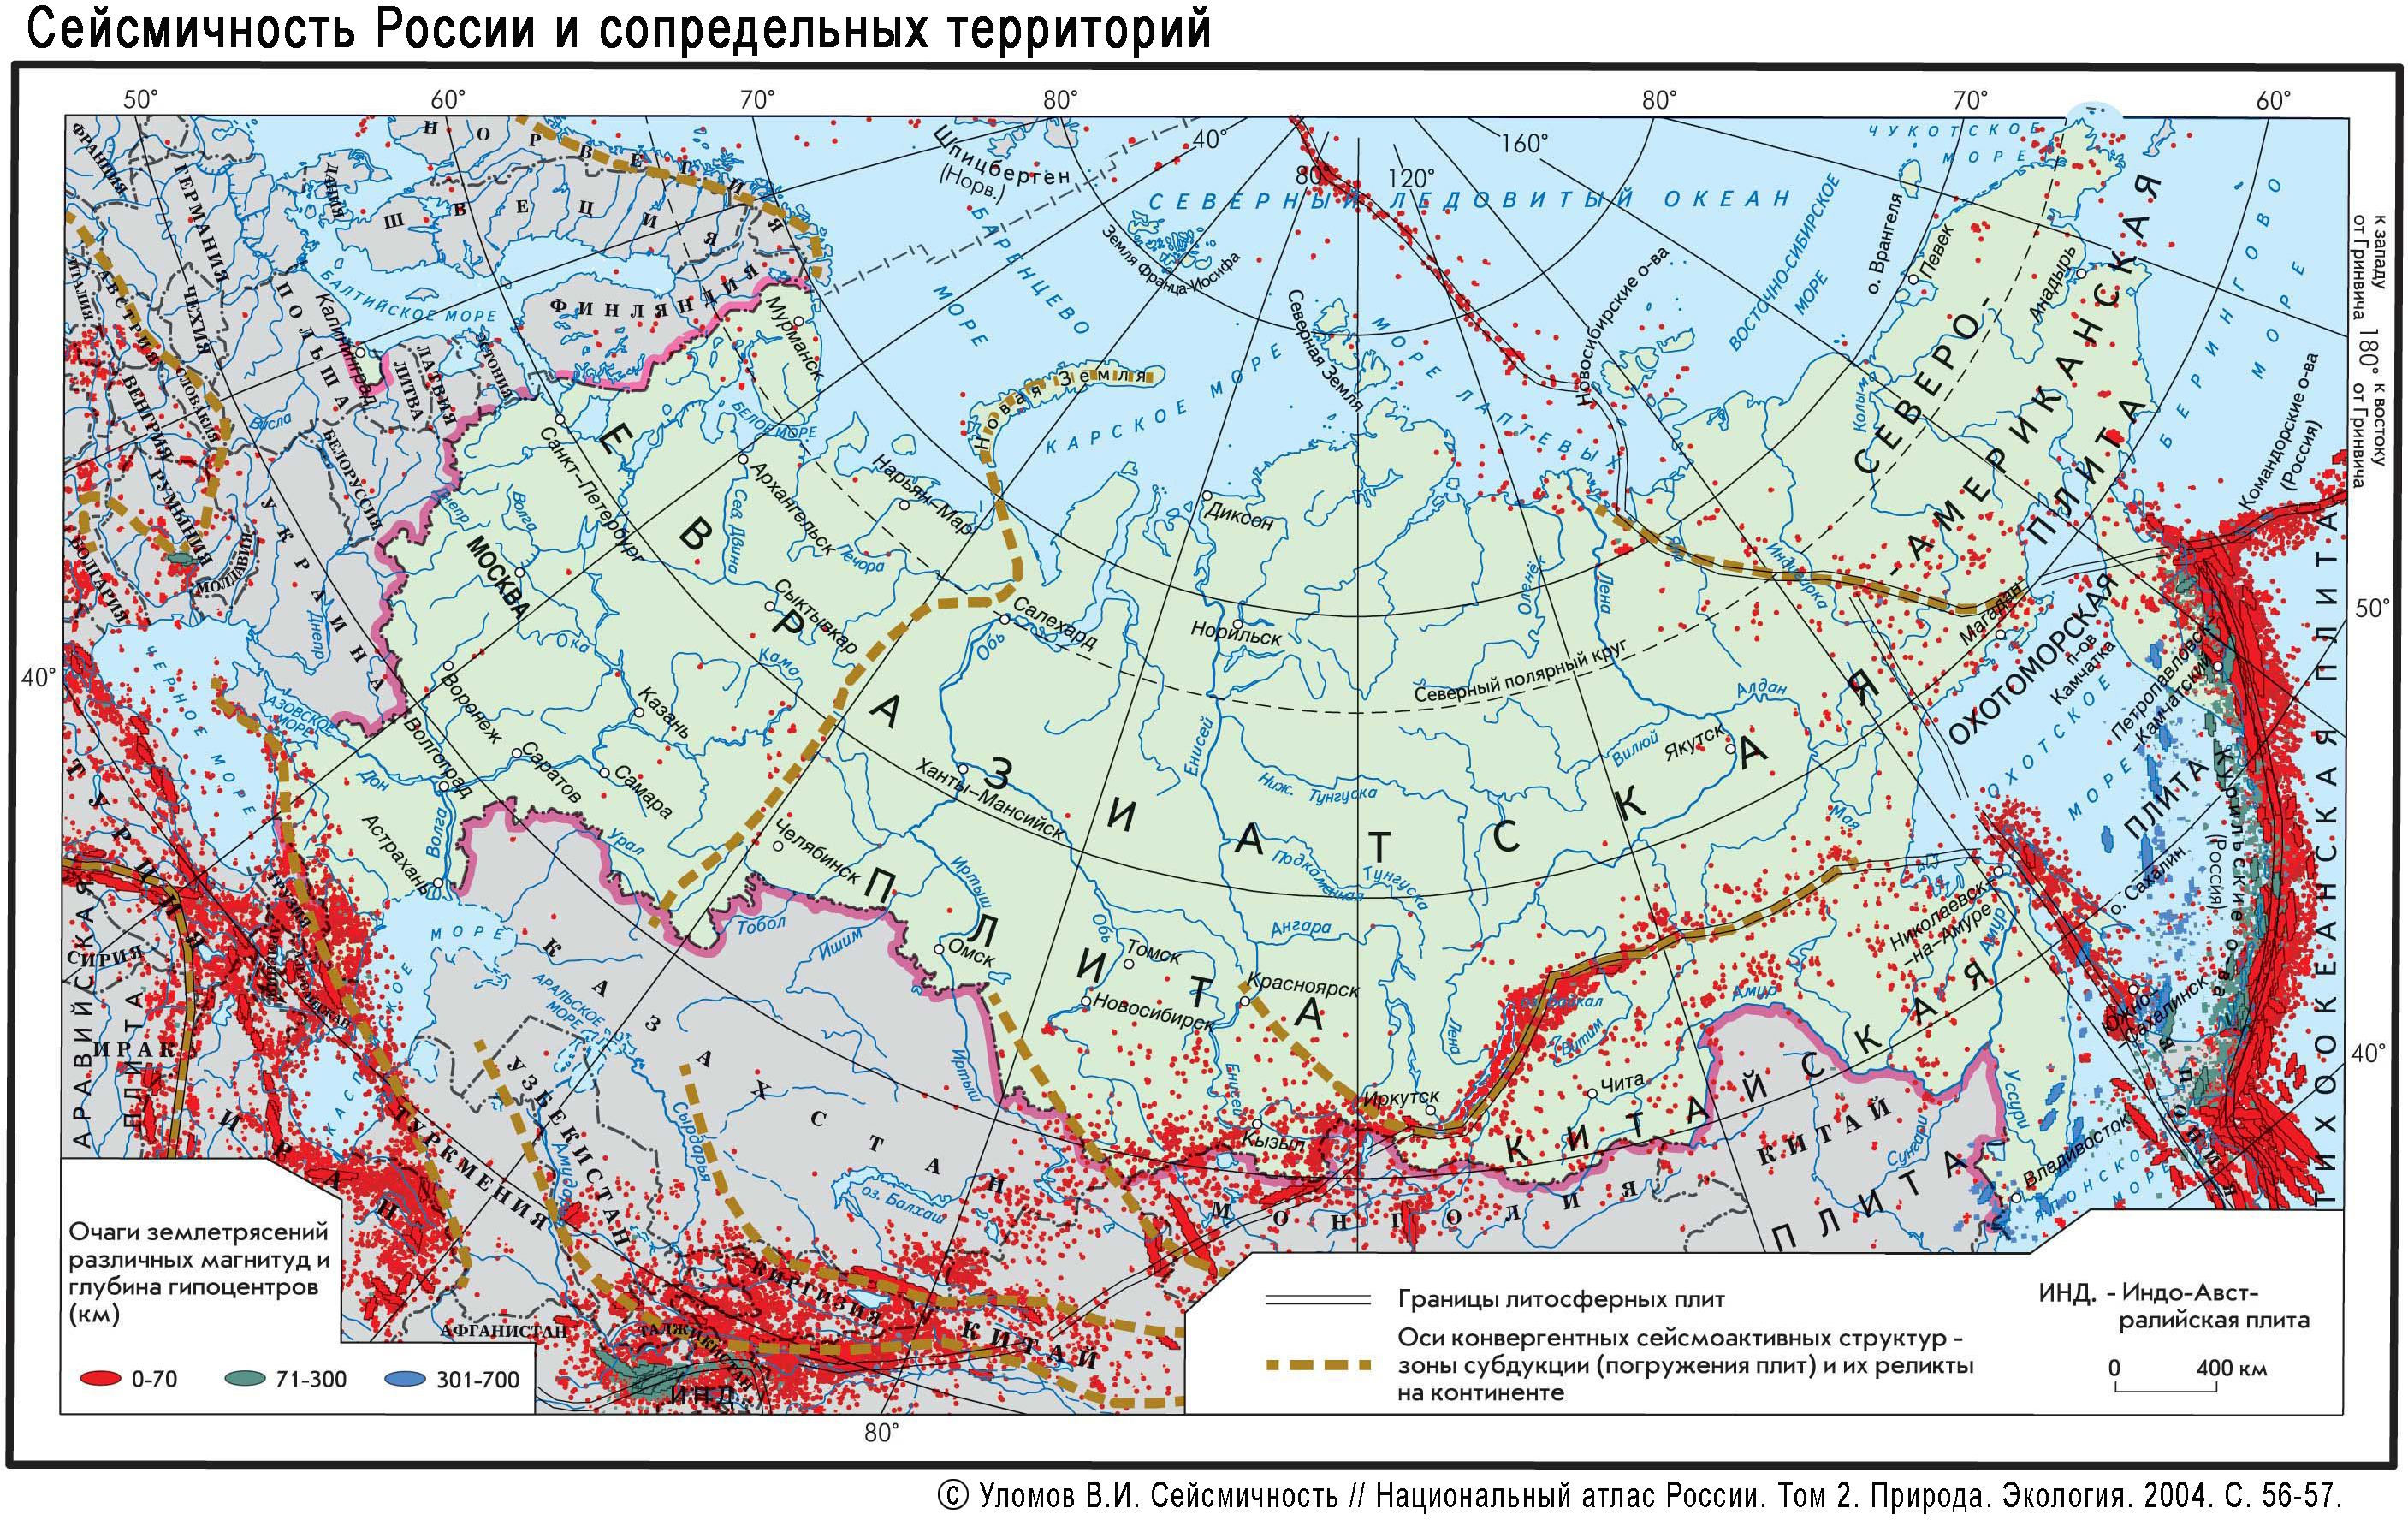 Сейсмичность России и сопредельной территории. 195 Кбайт